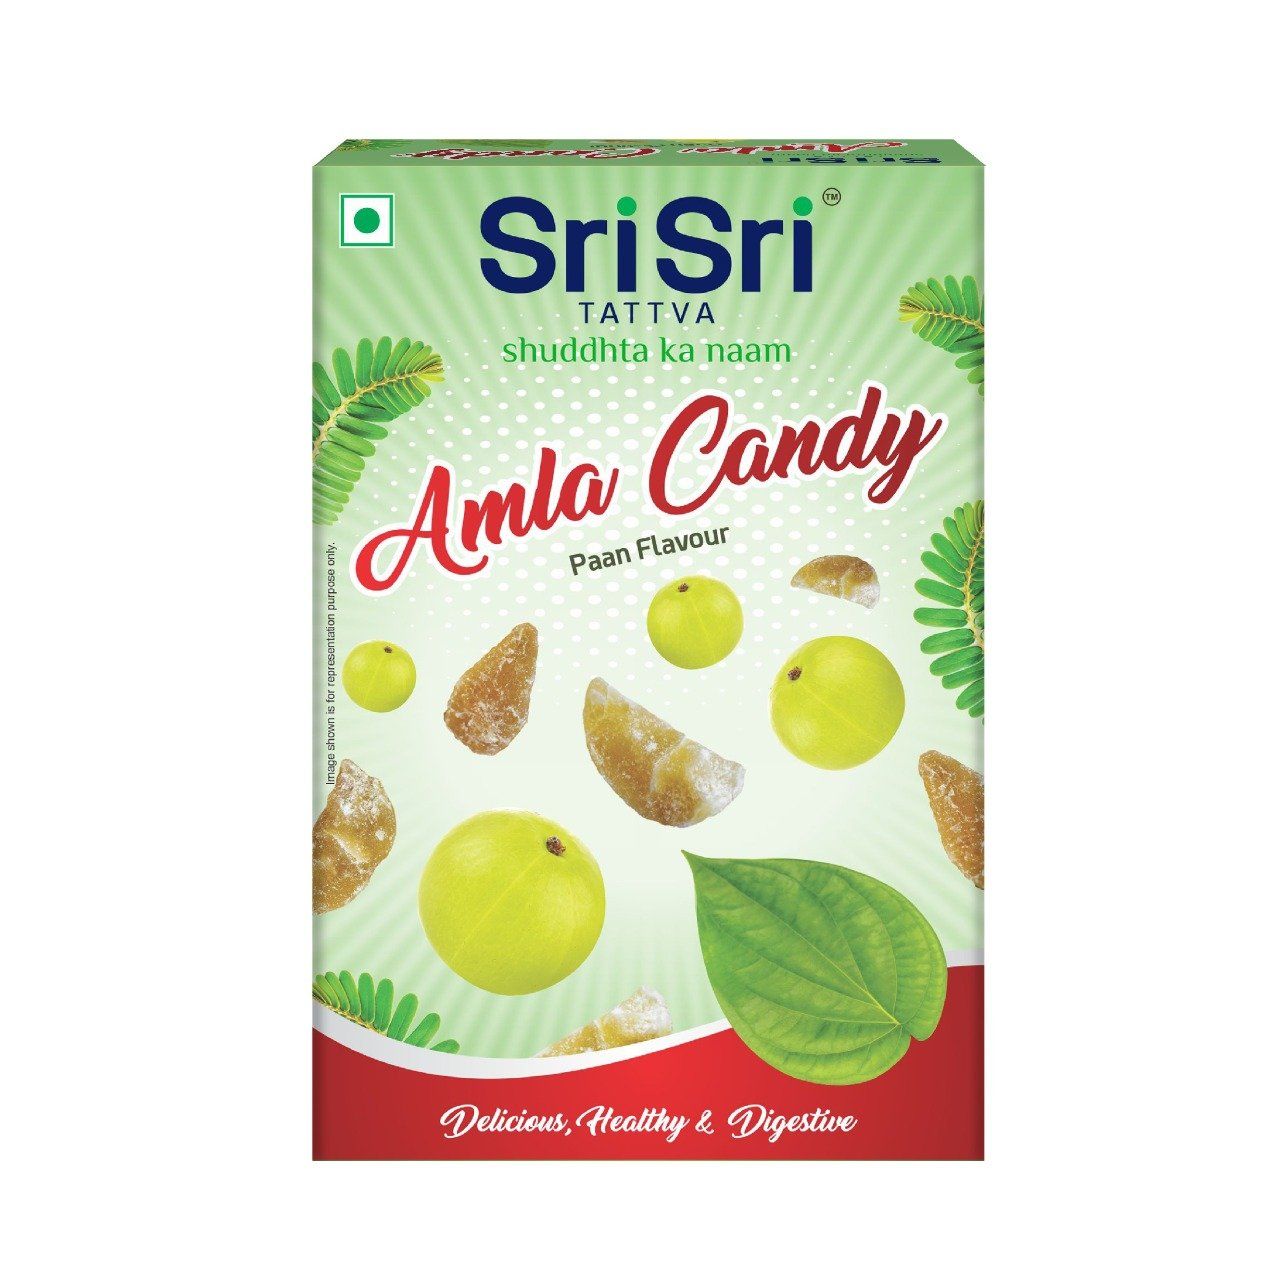 Amla Candy, Delicious Healthy & Digestive, 400g - Buy 2 Get 1 Free - Sri Sri Tattva